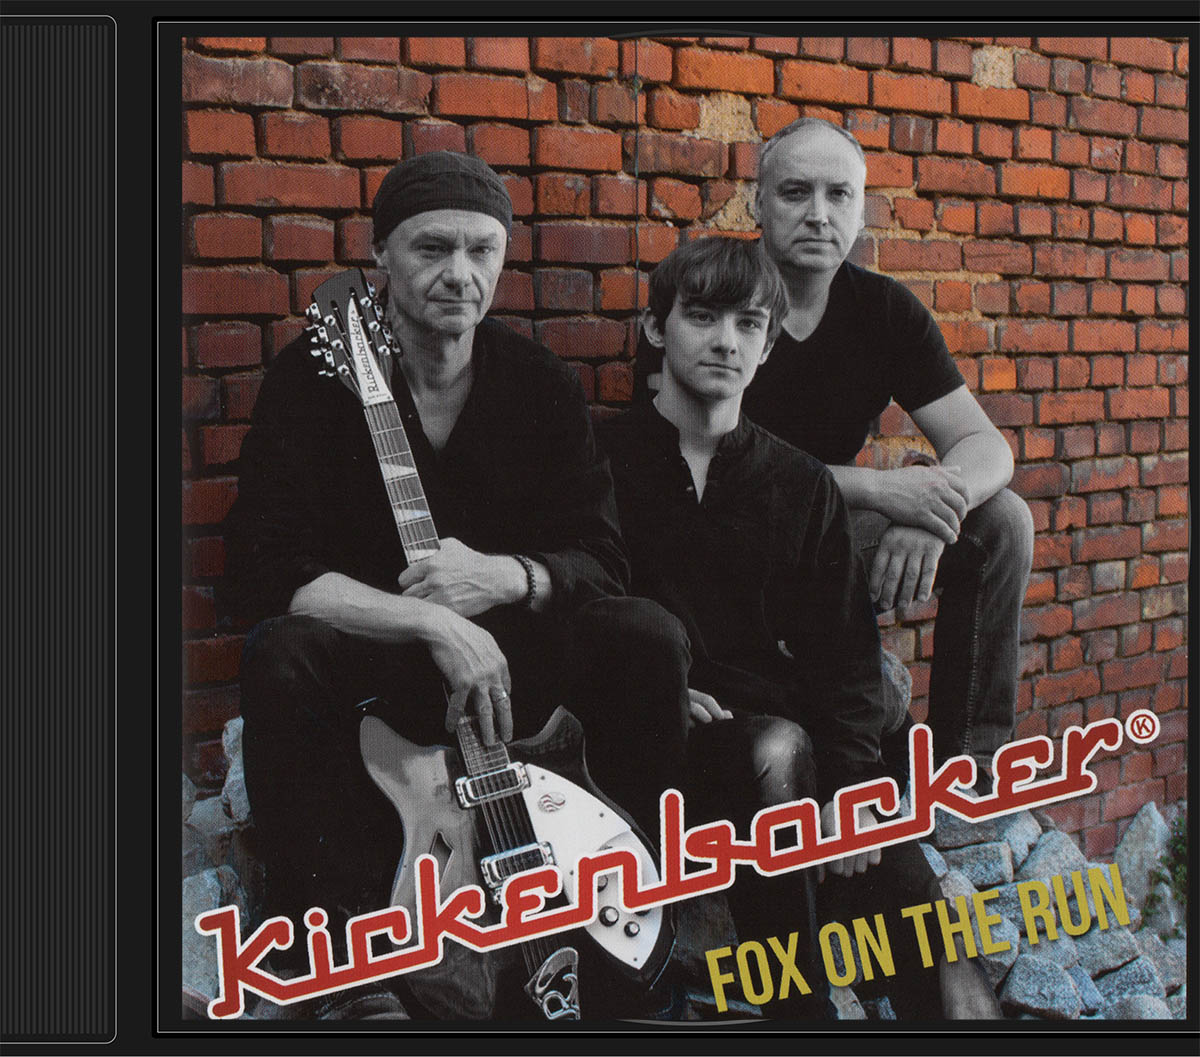 Kickenbacker mit Fox on the Run